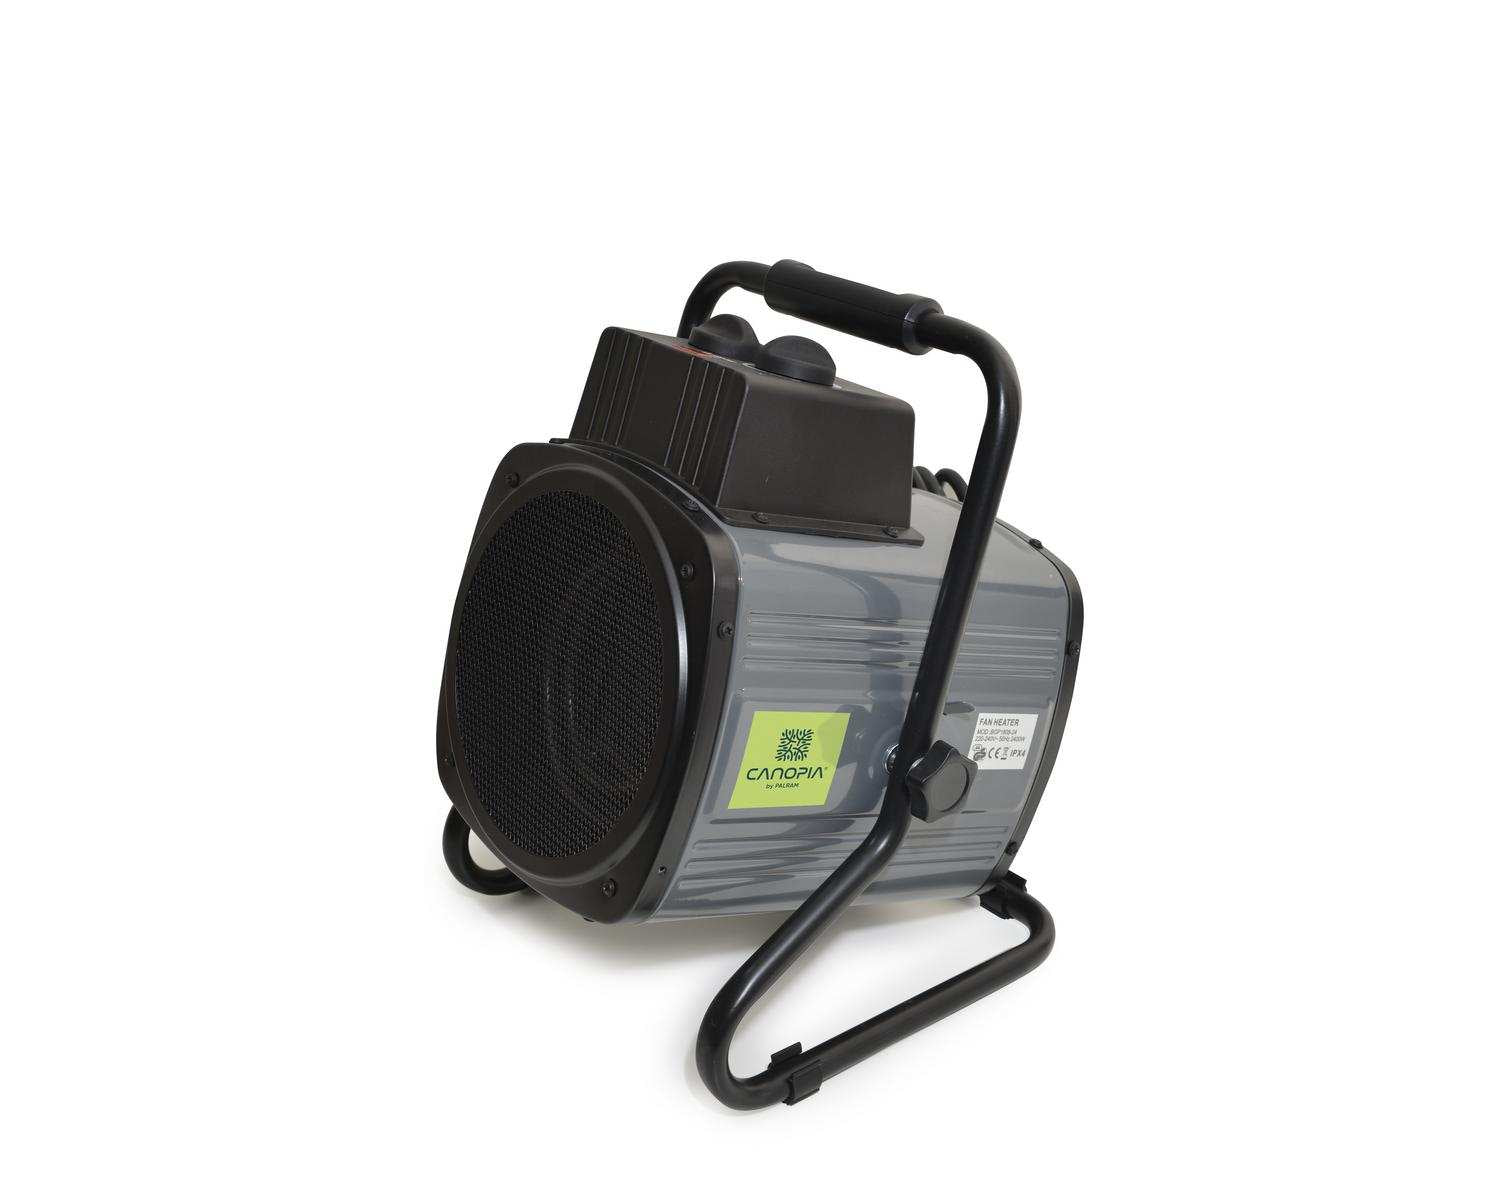 Portable Splash Resistant Greenhouse Fan Heater 2400W UK - Nuovo Luxury